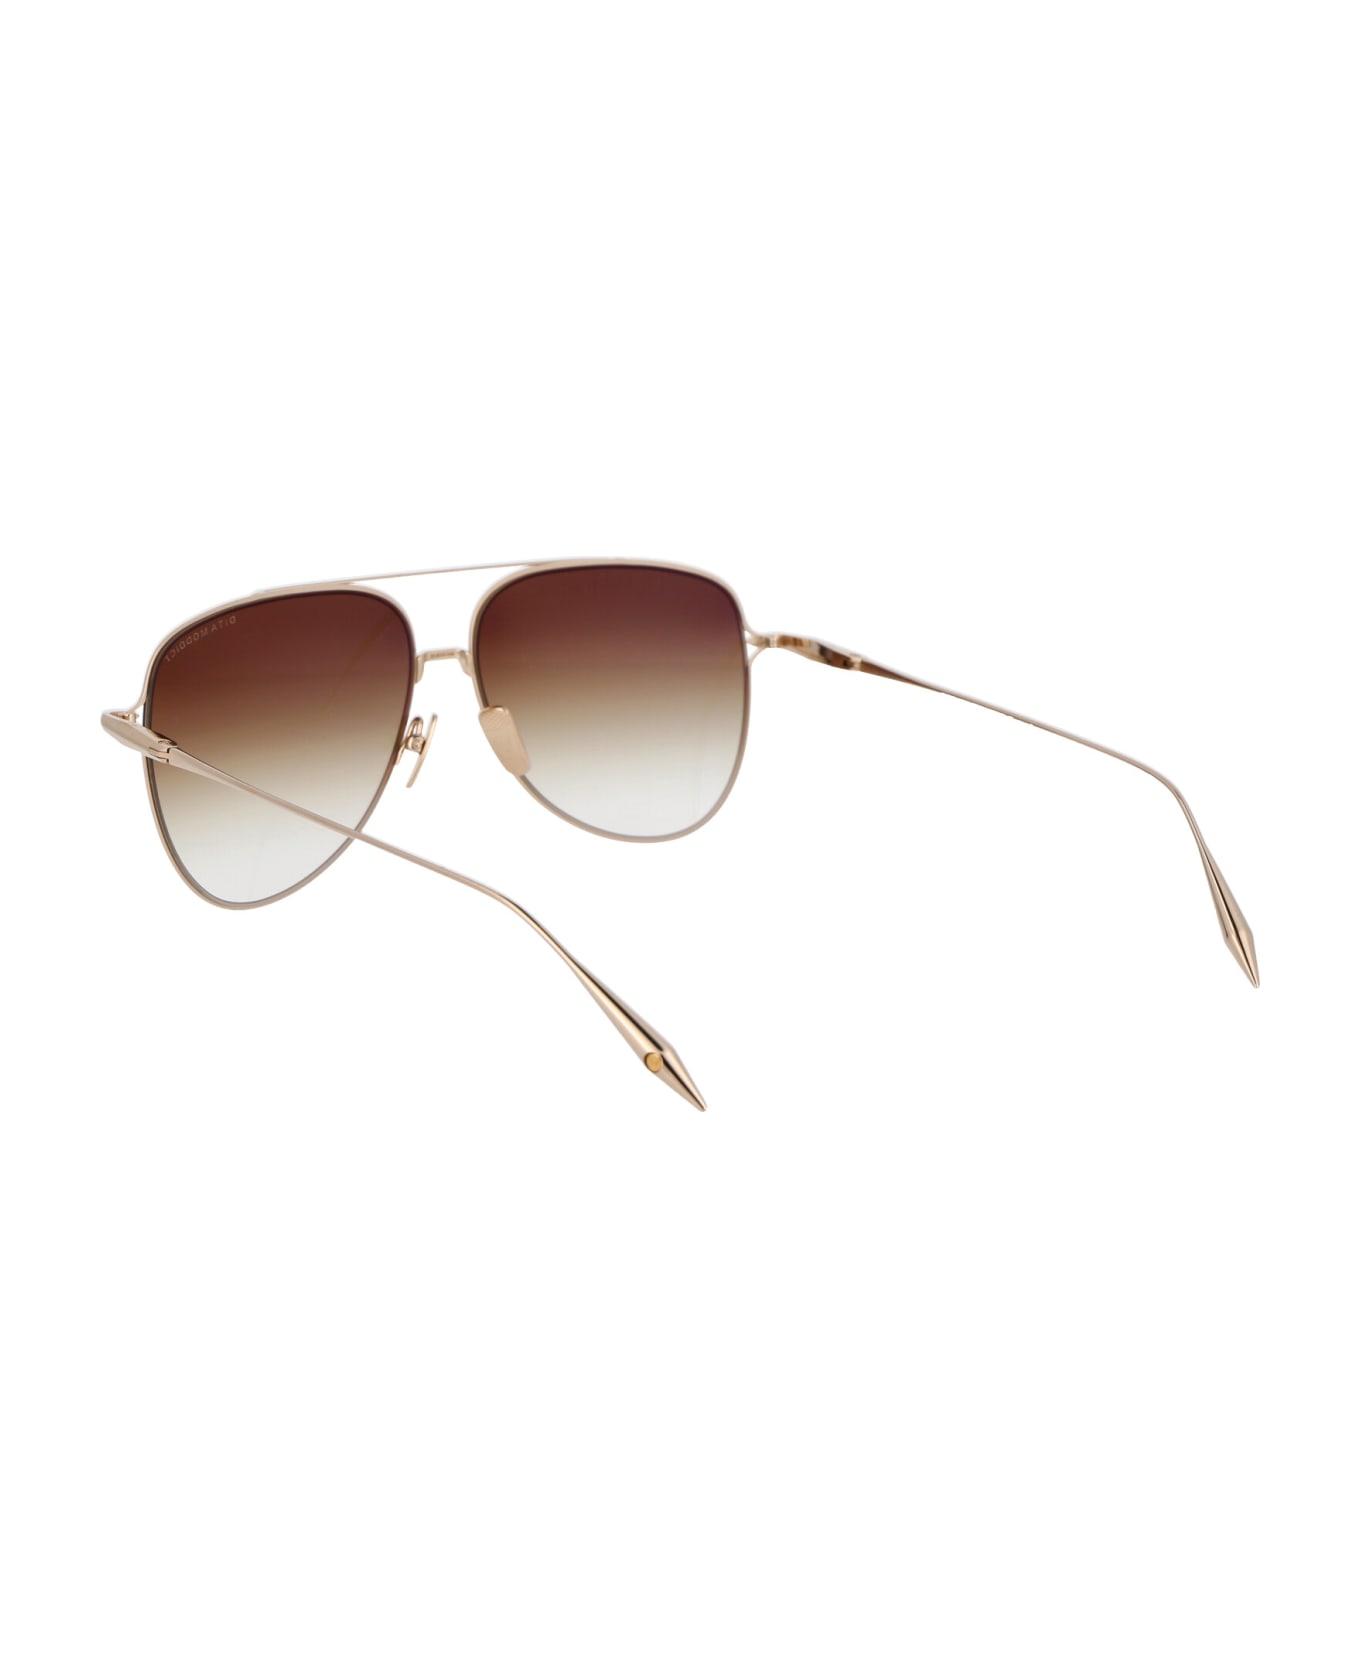 Dita Moddict Sunglasses - White Gold - Gradient サングラス